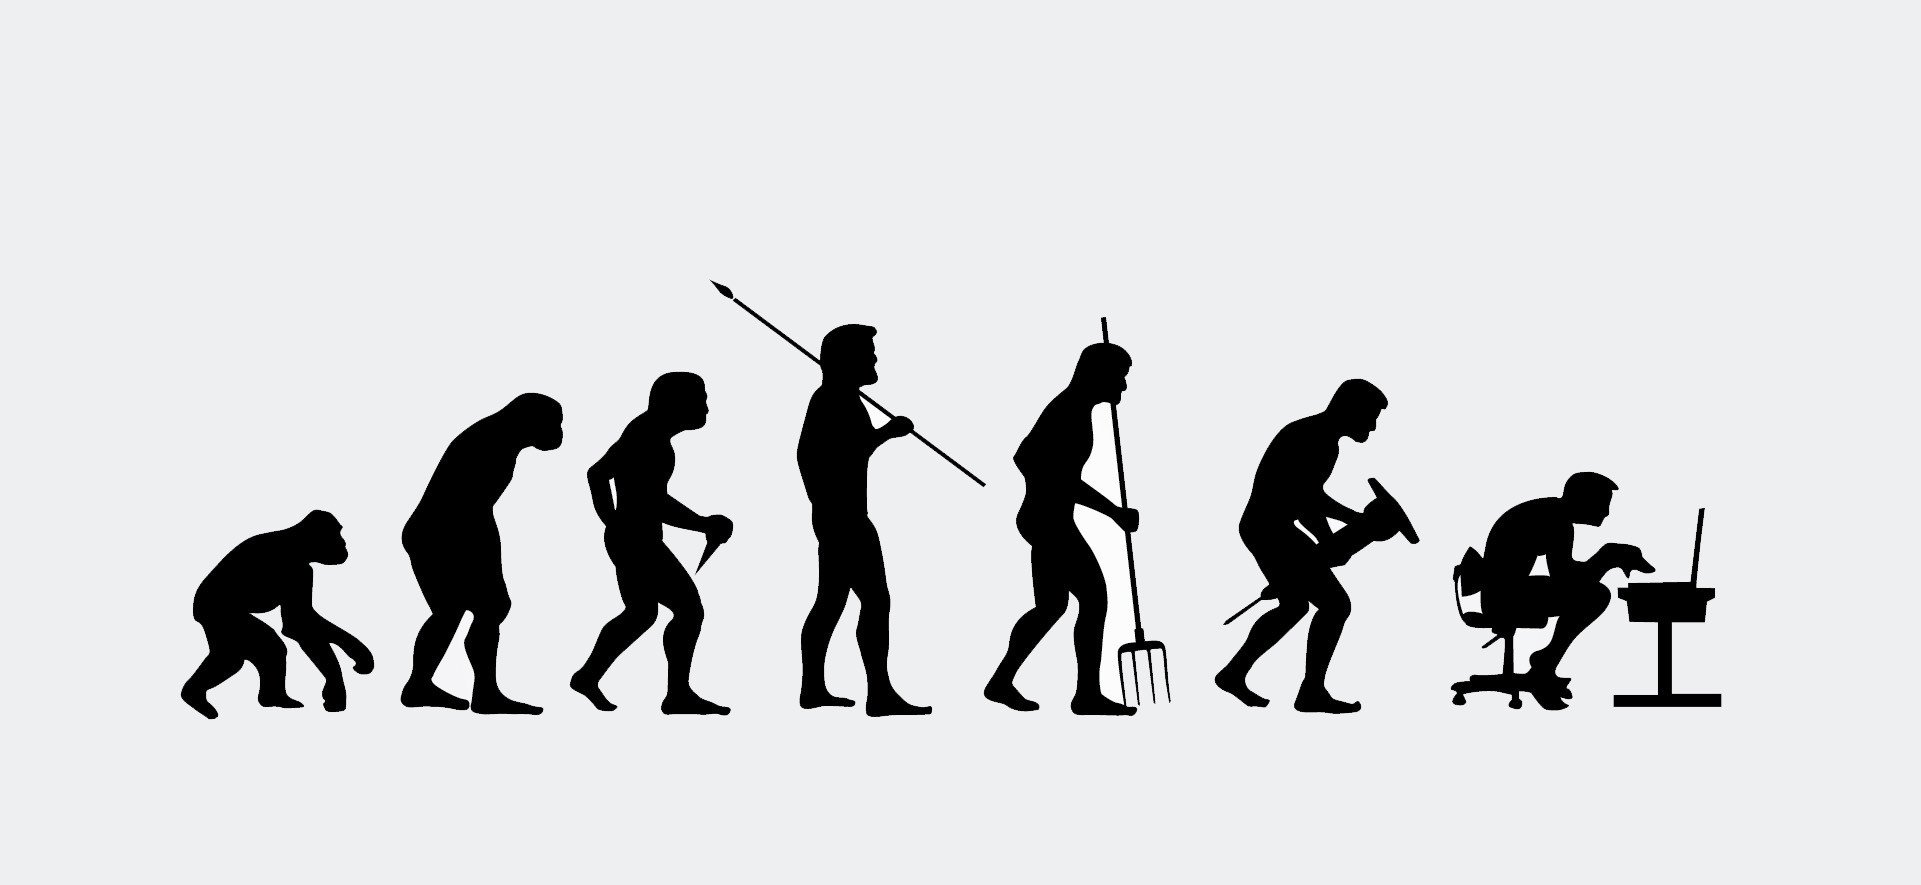 Как трудовая деятельность связана с образом жизни. От обезьяны до человека. Эволюция человека от обезьяны. Развитие человека. Человек от обезьяны до человека.